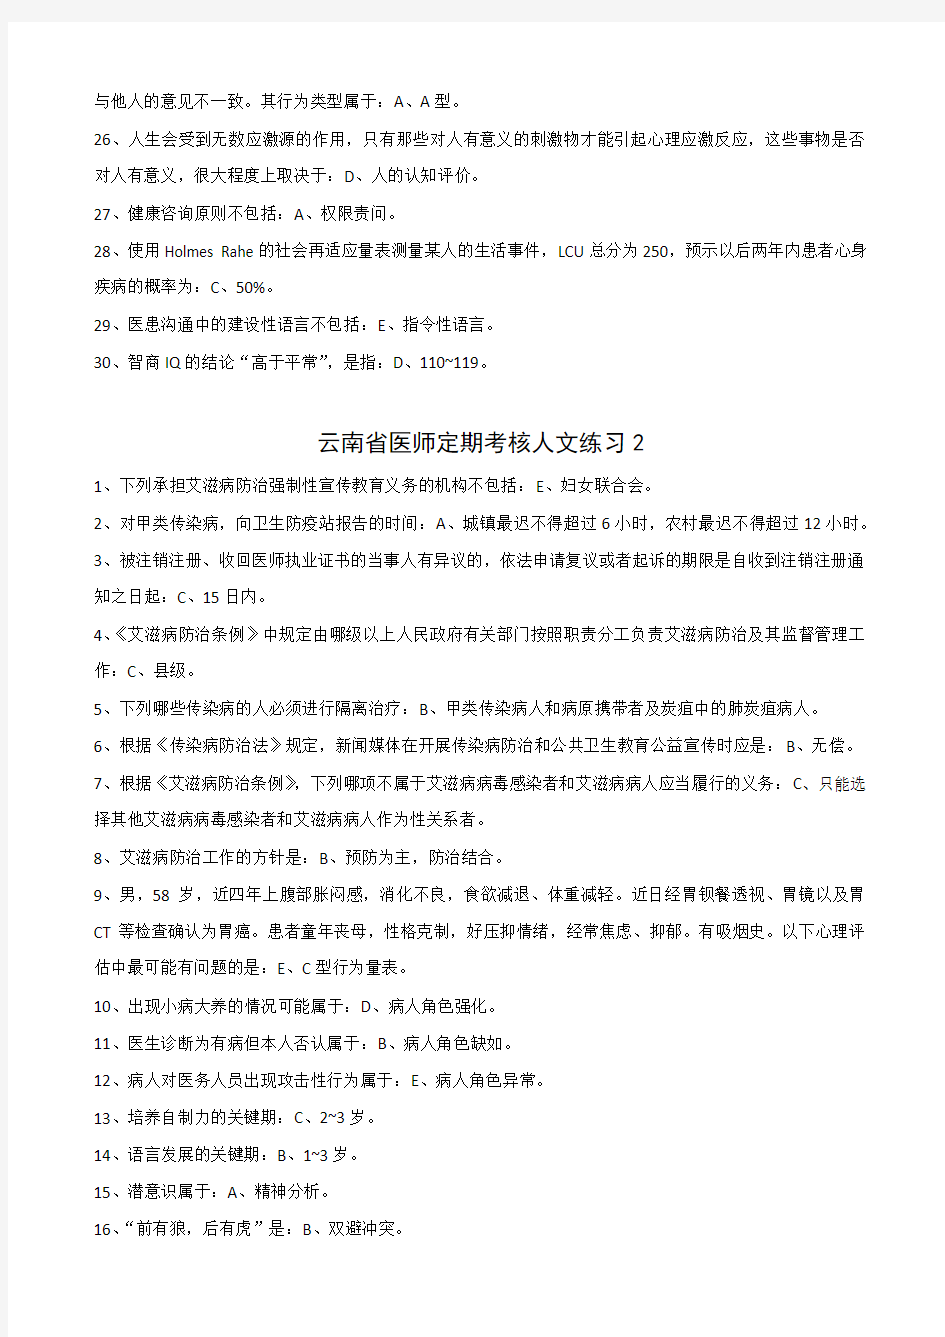 2017年云南省医师定期考核人文练习答案汇总